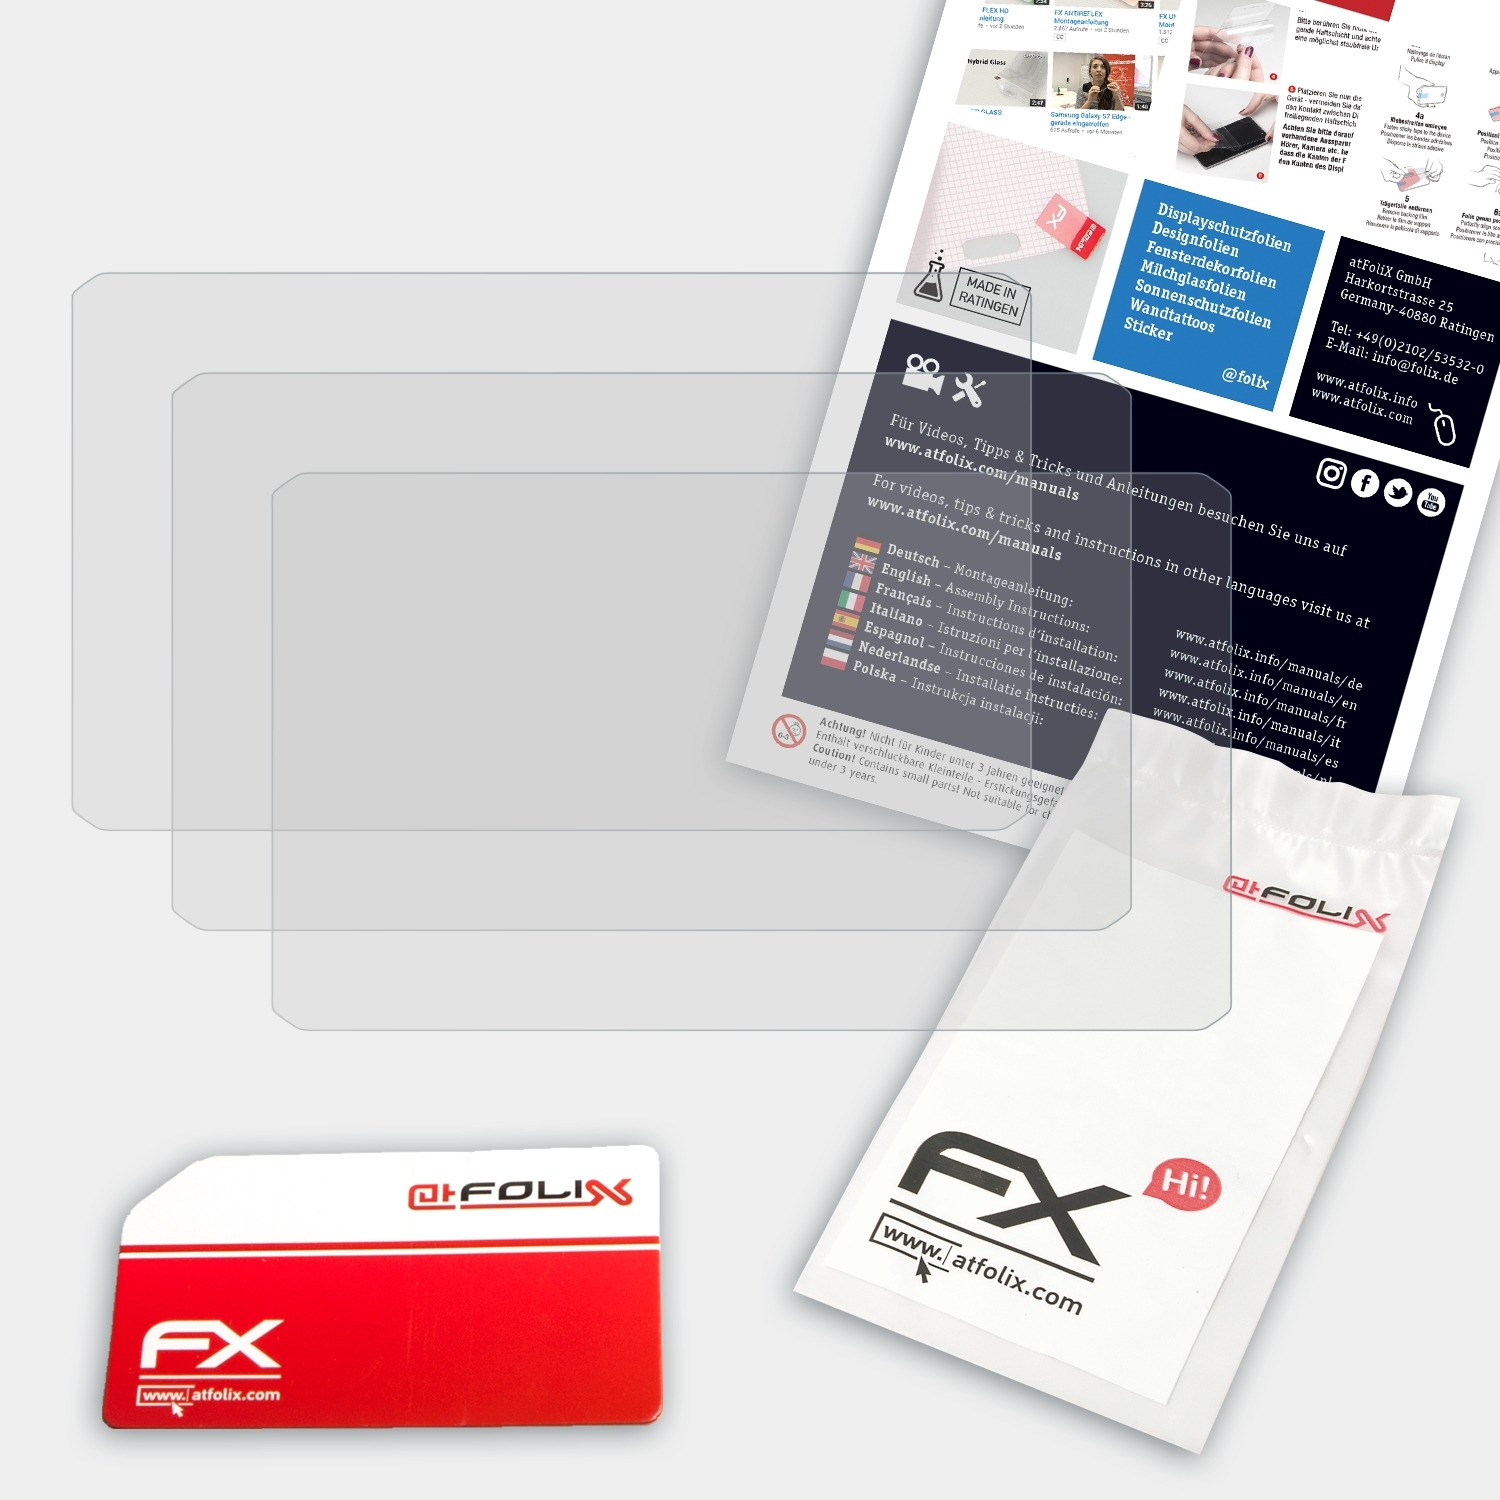 ATFOLIX 3x FX-Antireflex Displayschutz(für Garmin LGV700) dezl